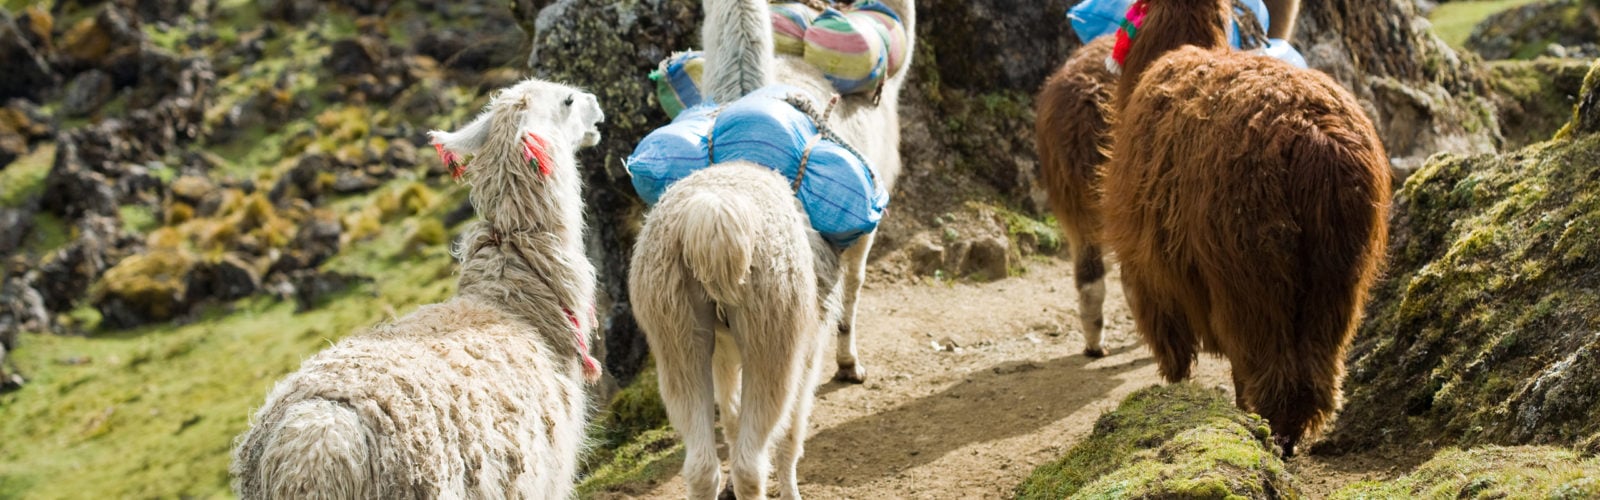 Llamas on the Inca Trail, Peru